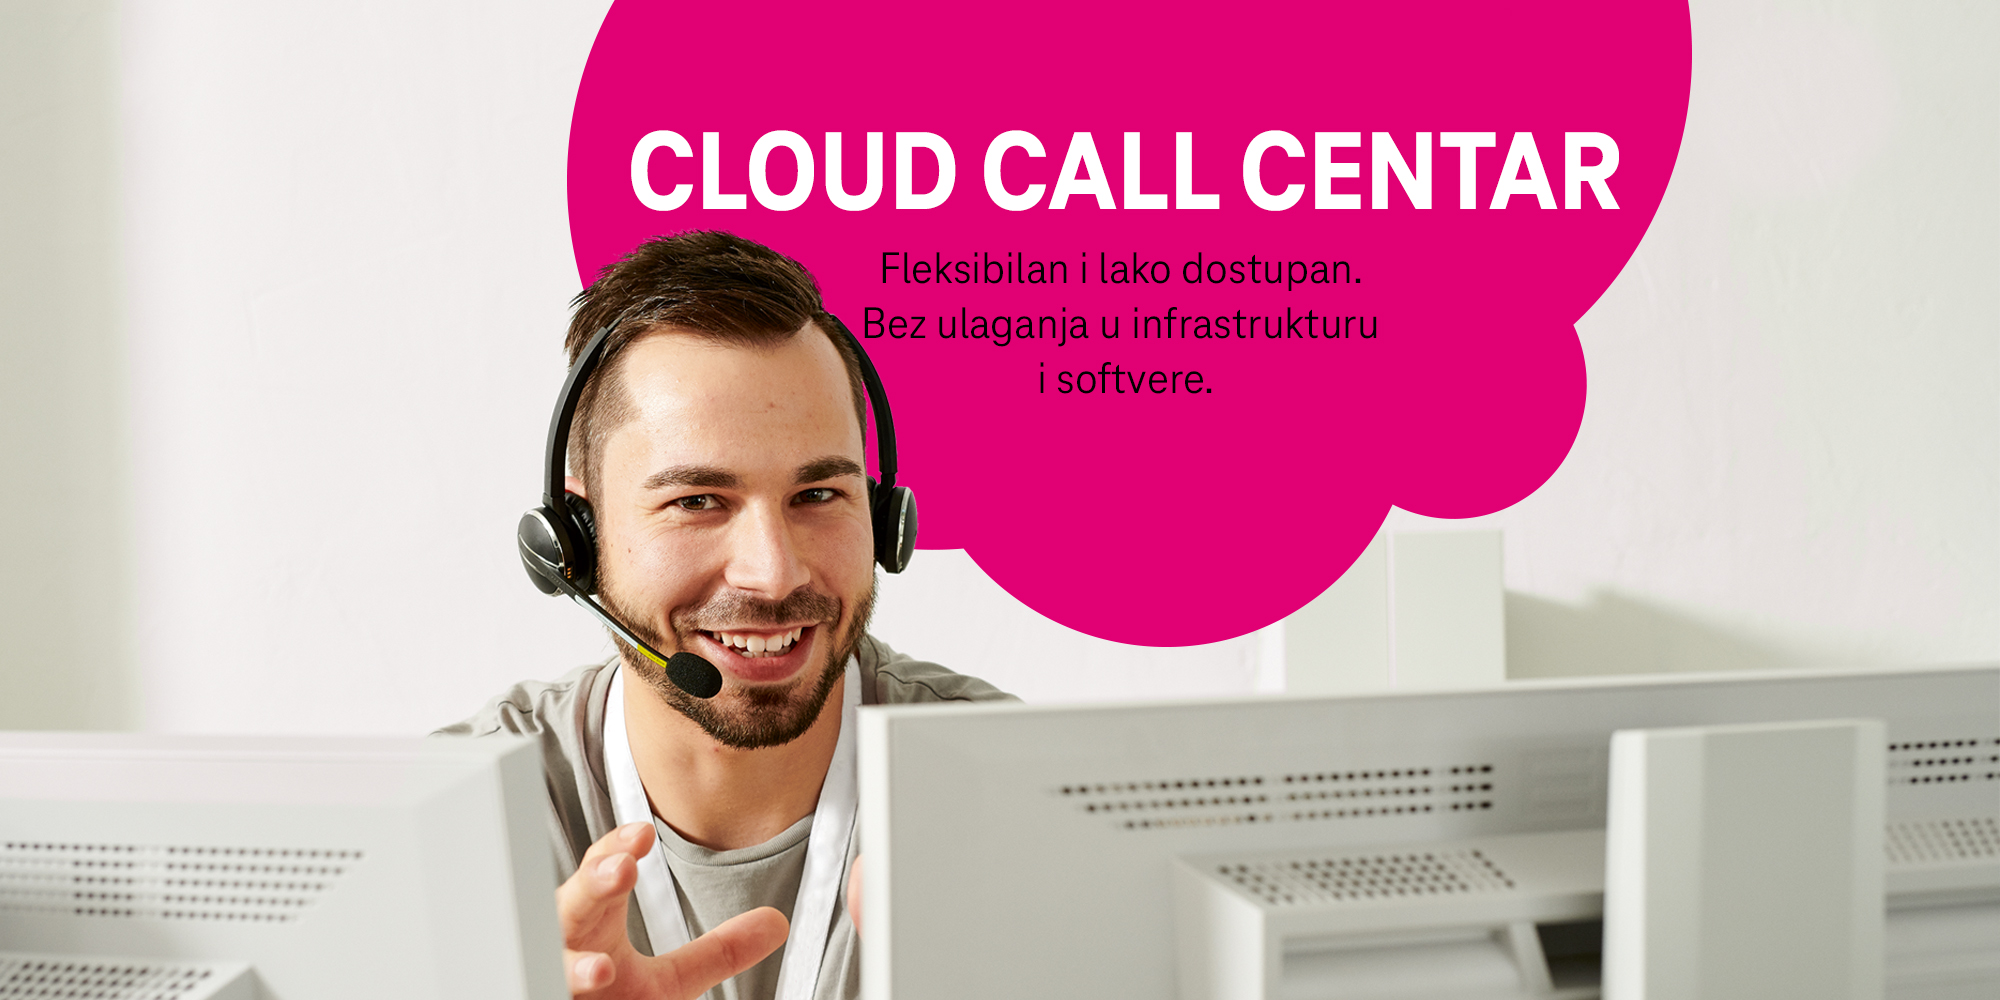 Telekom: Cloud Call centar – digitalna usluga koja će transformisati vaše poslovanje